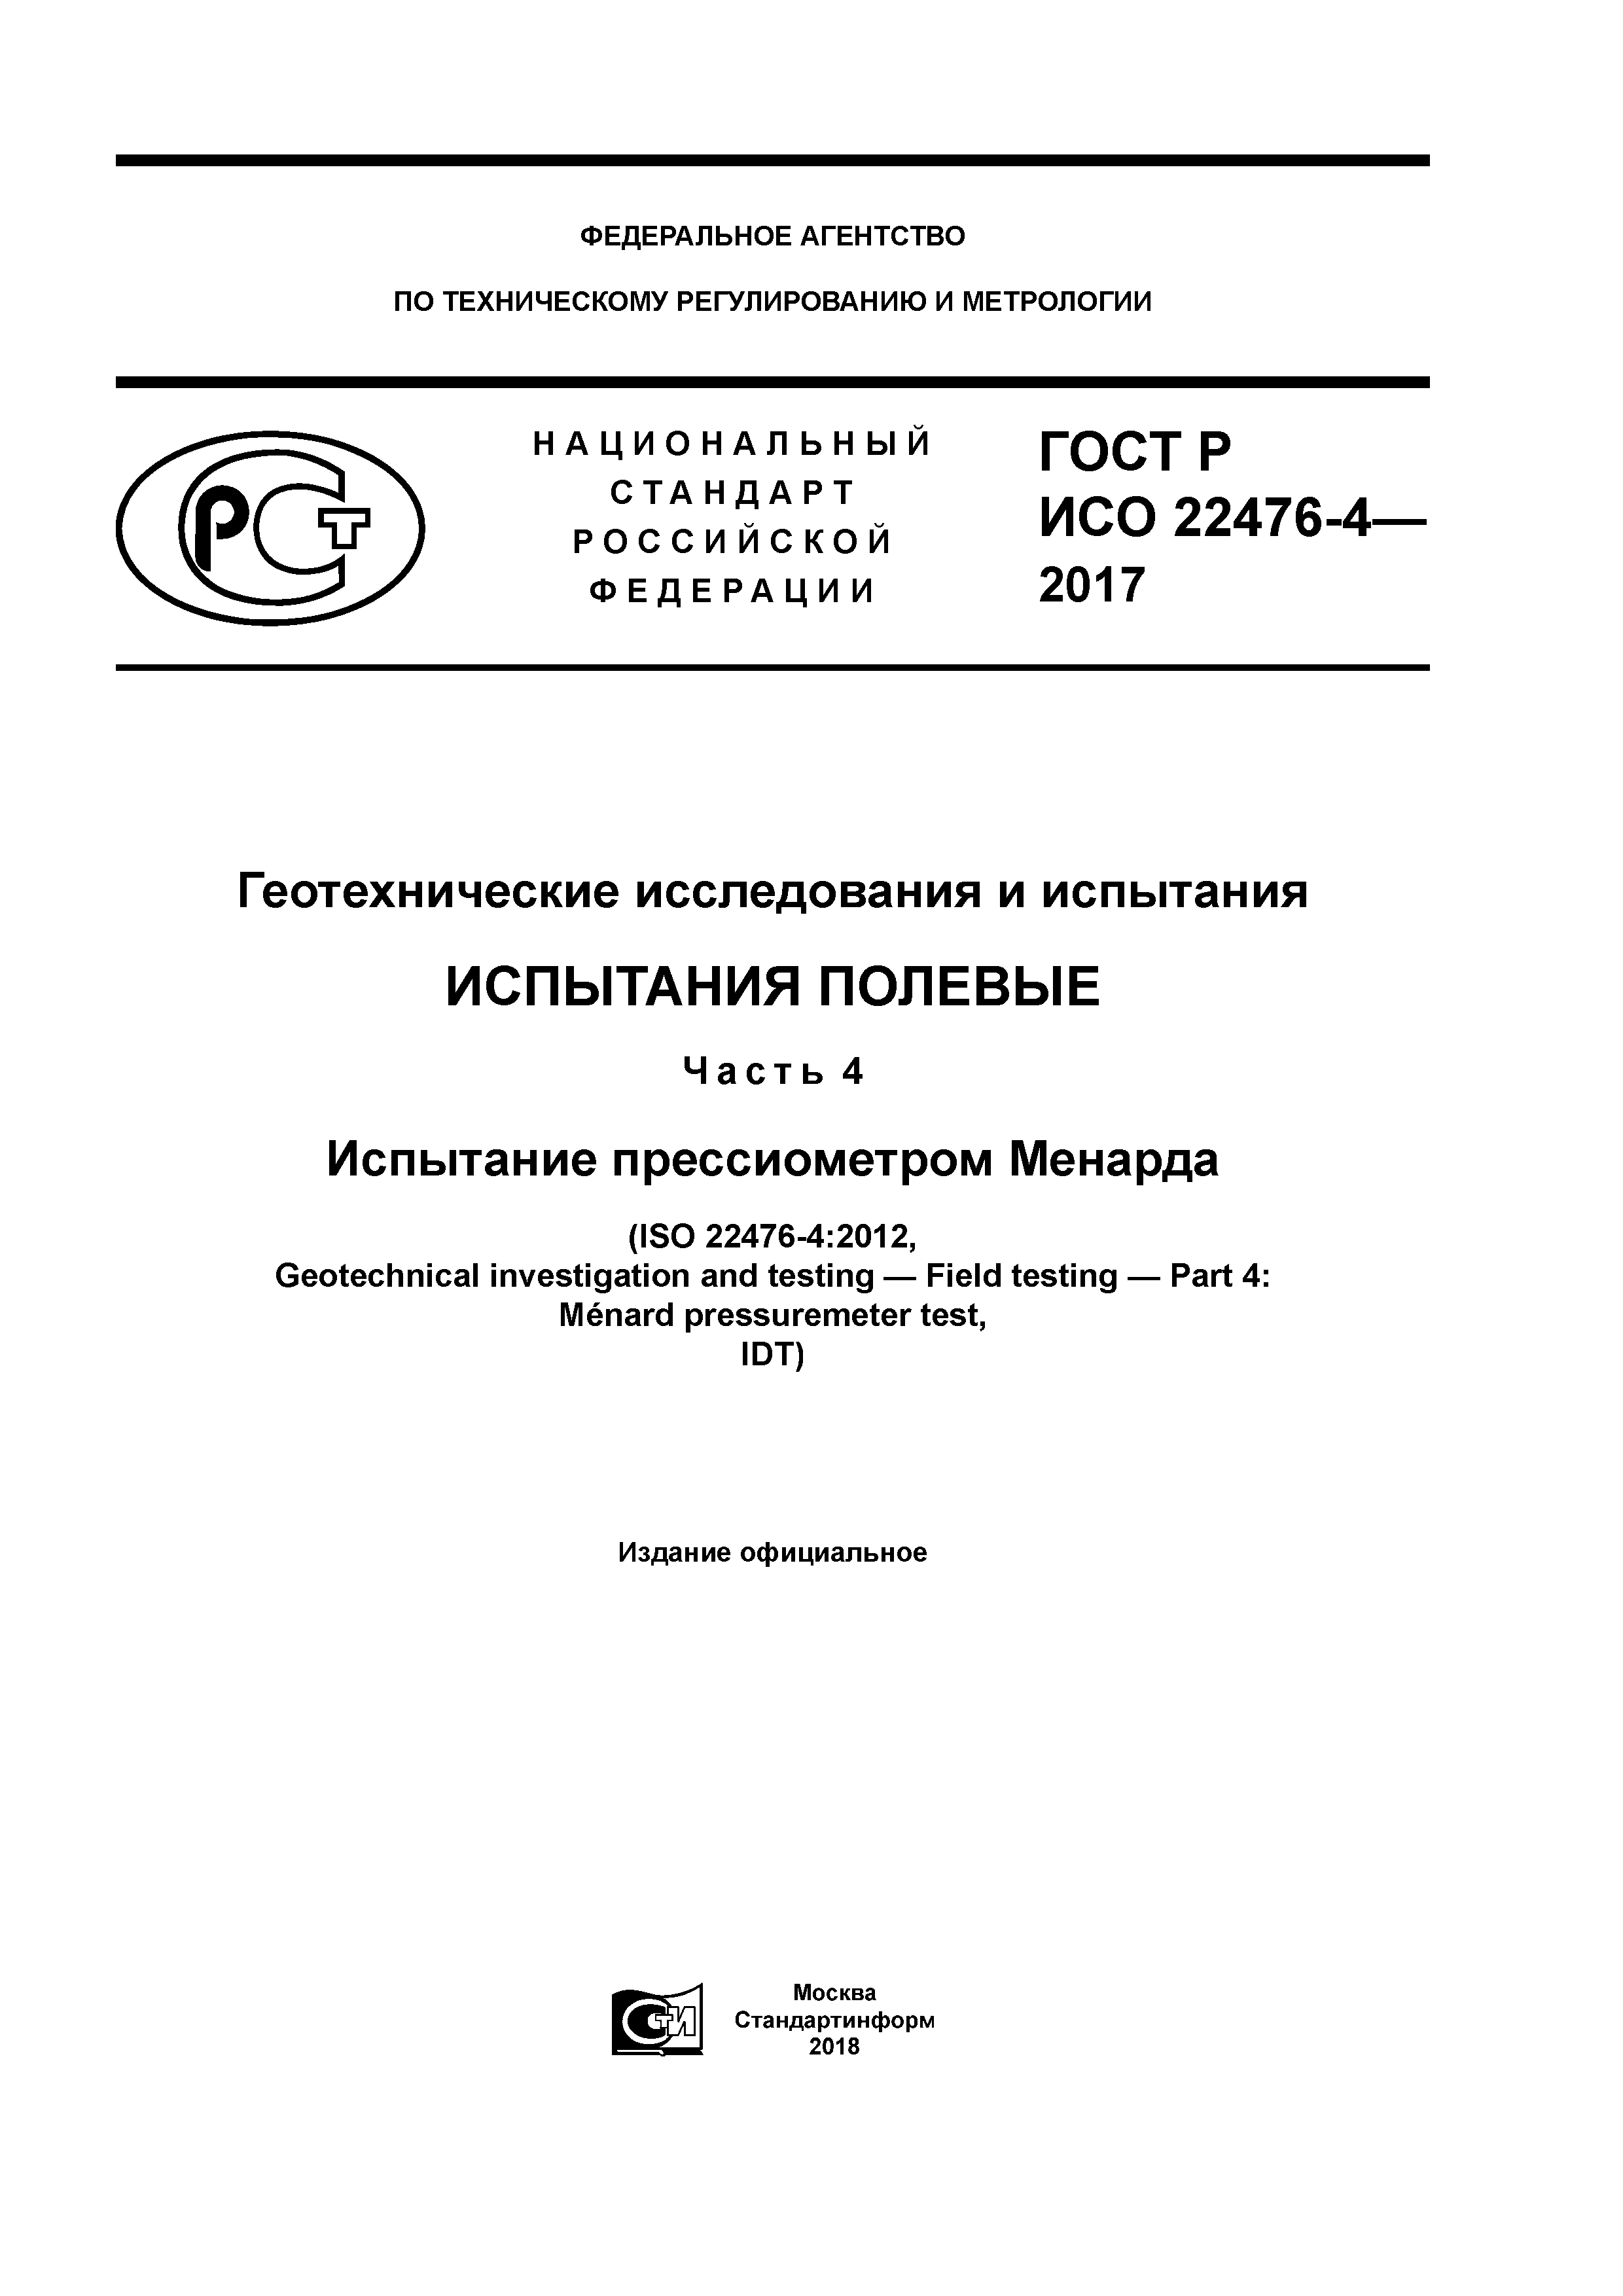 ГОСТ Р ИСО 22476-4-2017